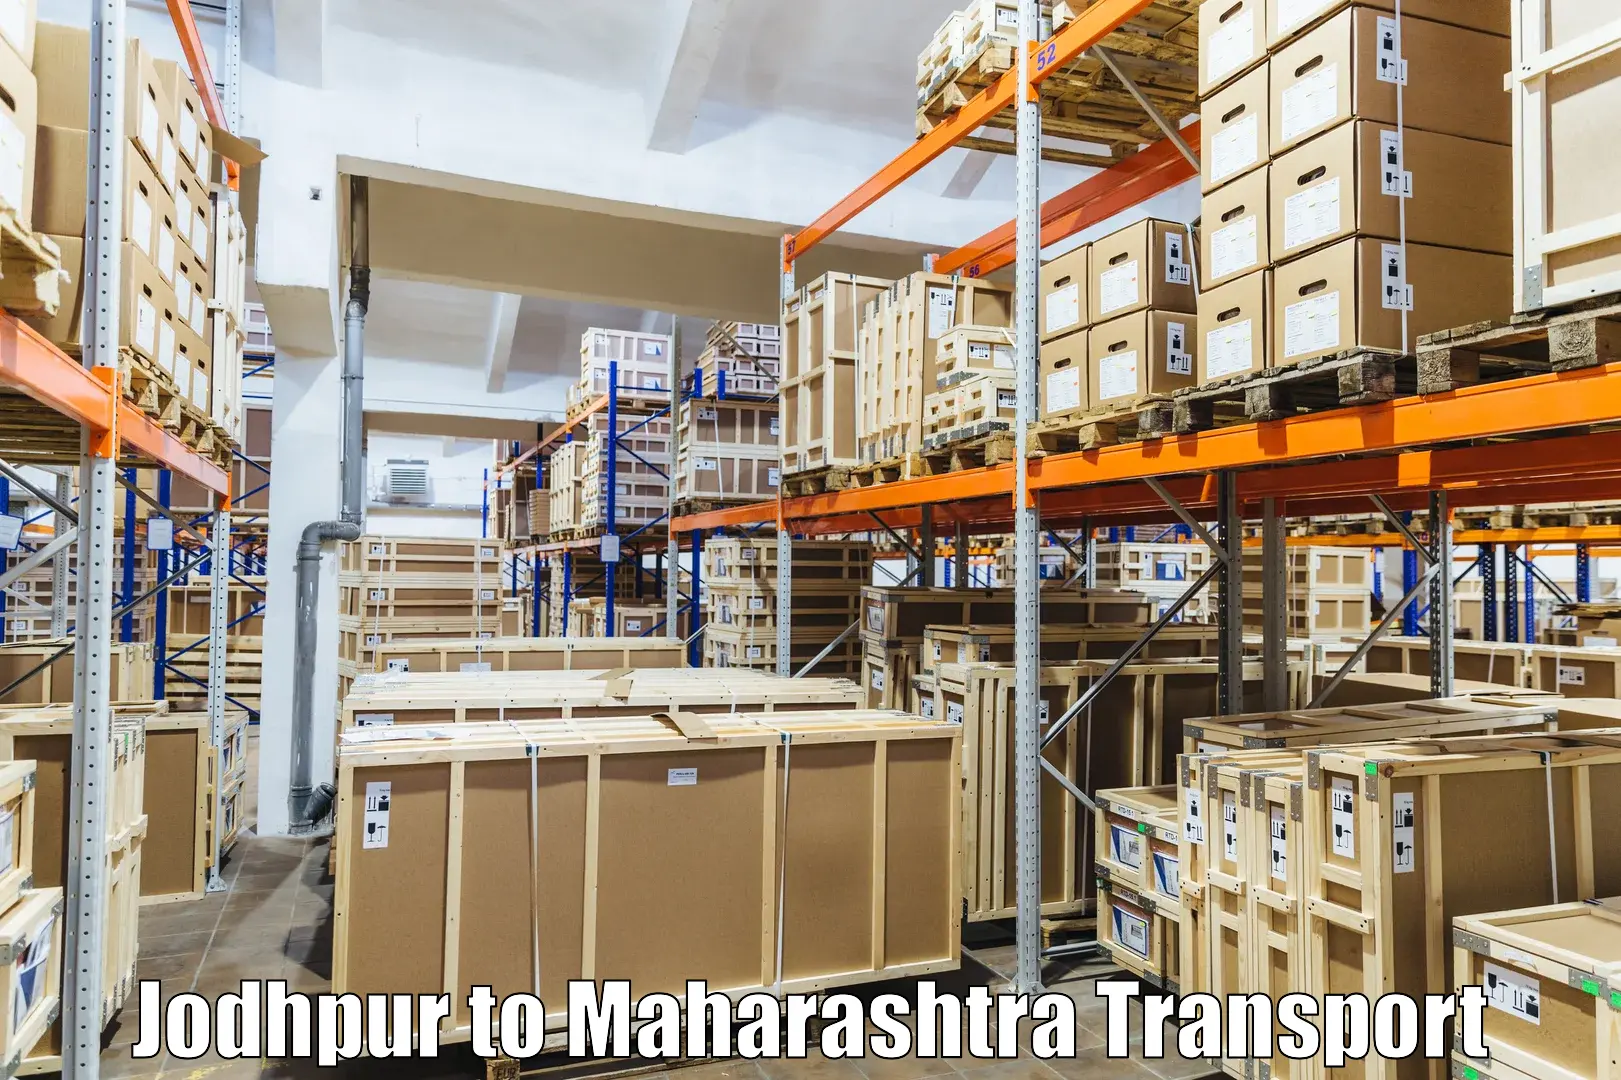 Daily transport service Jodhpur to Mahur